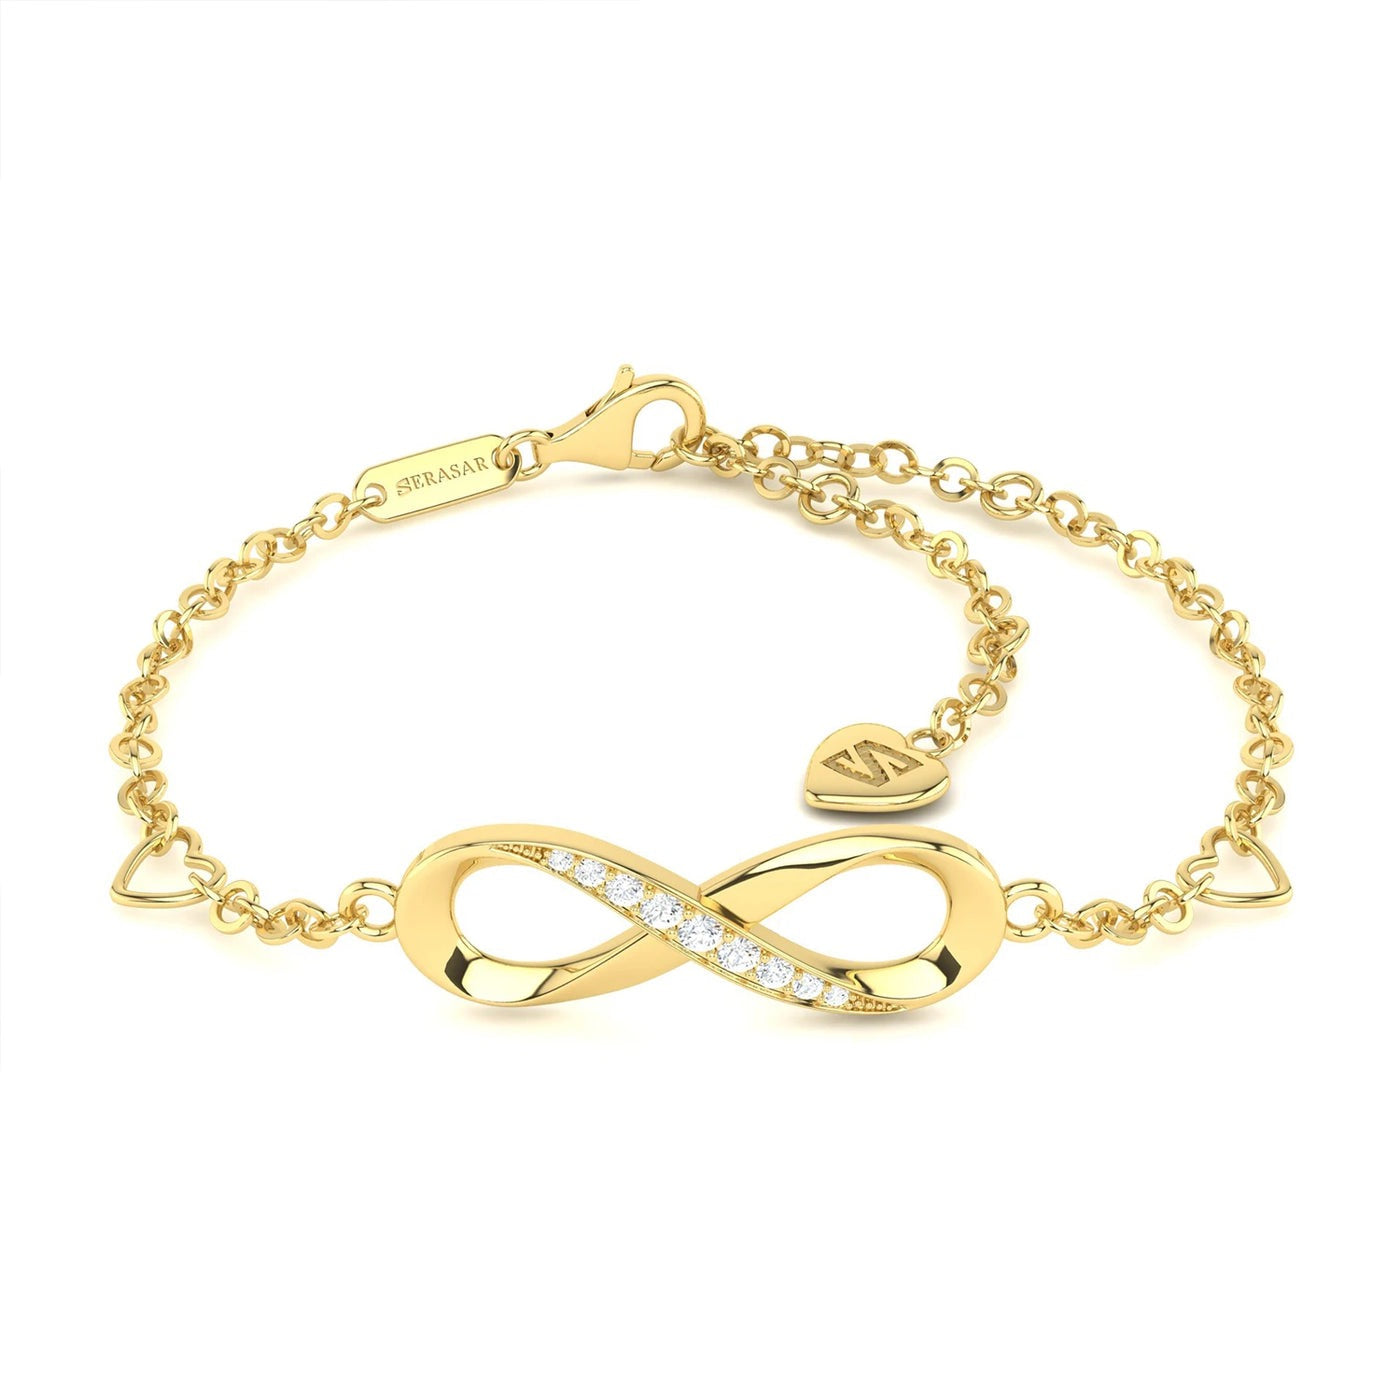 Armband "Infinity" - außergewöhnlich filigranes Design und elegante Unendlichkeitsschleife - ein echter Hingucker - GOLD